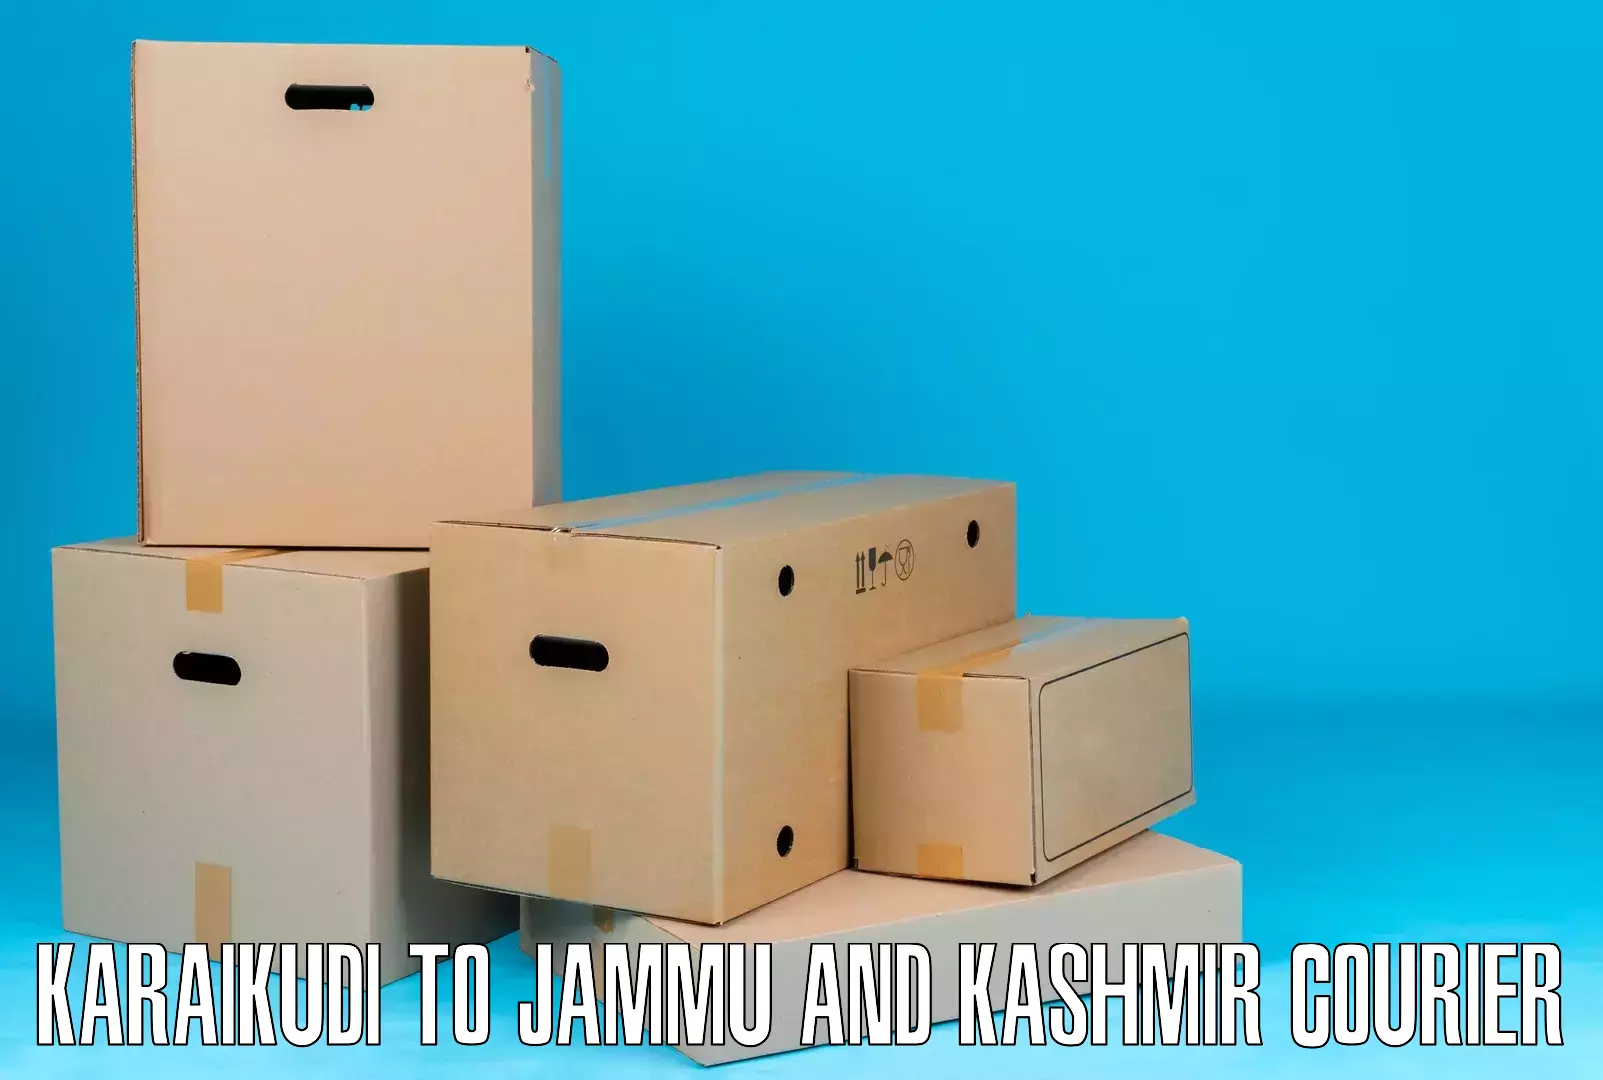 Logistics management Karaikudi to Jammu and Kashmir